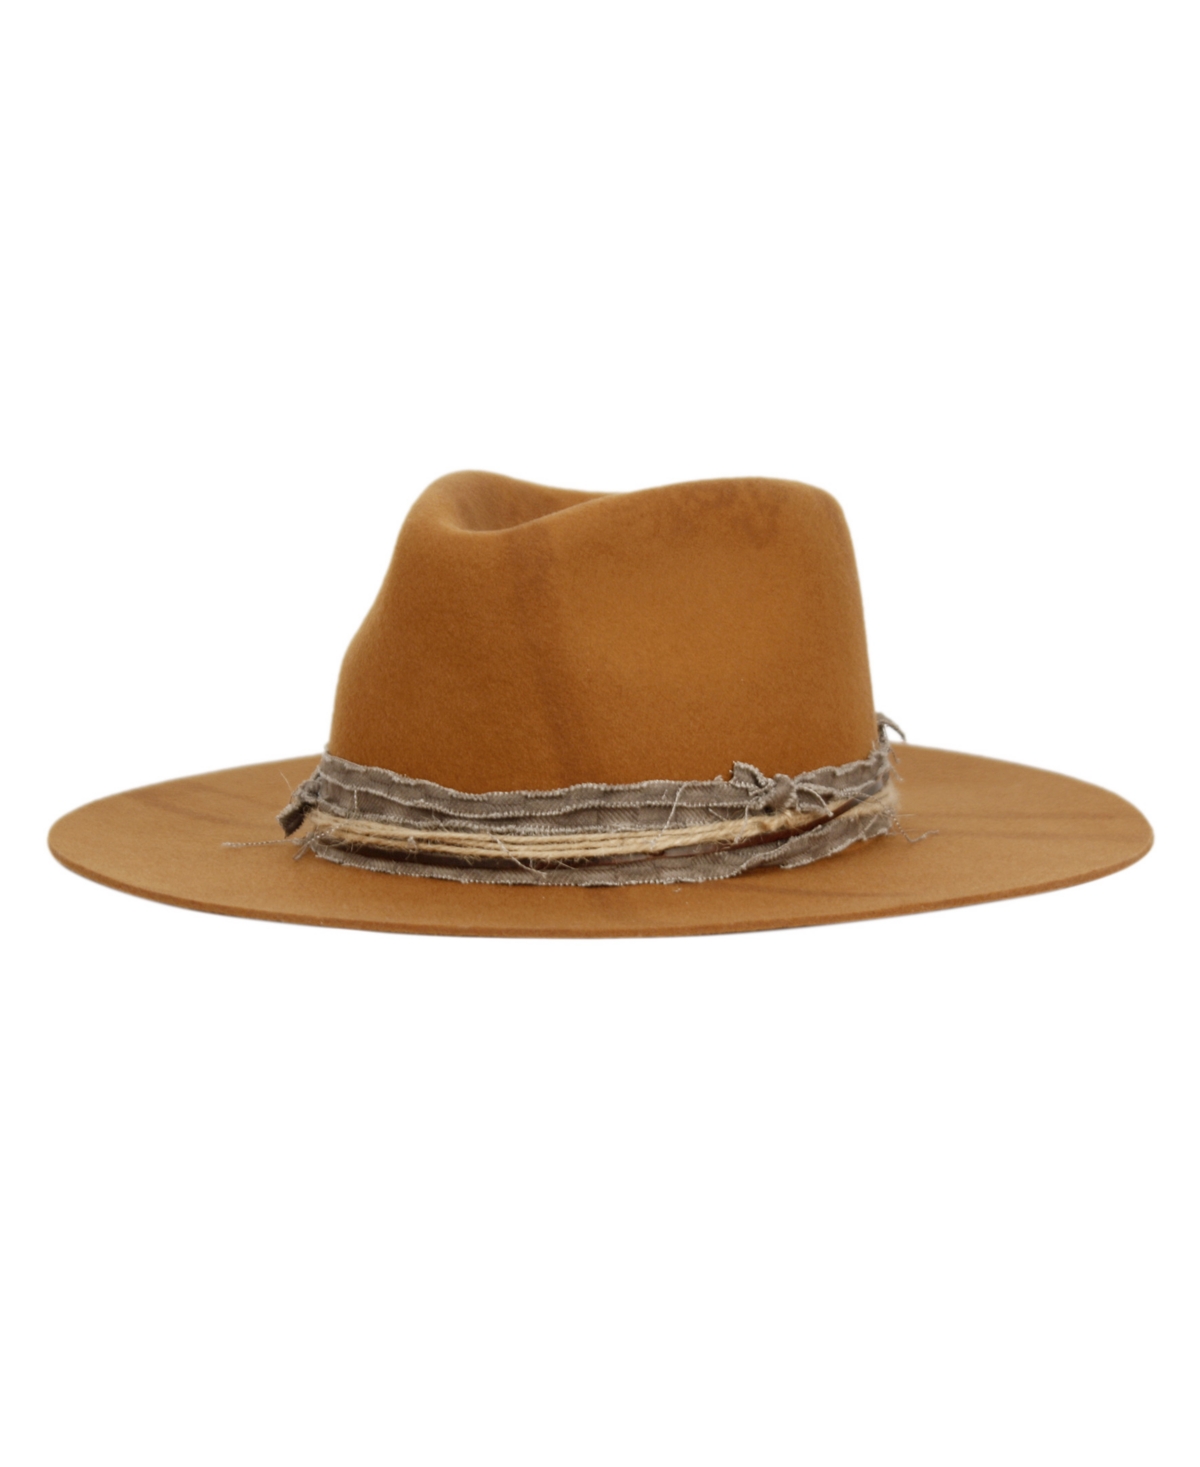 Vintage-Like Felt Fedora Ranch Hat - Lt Brown